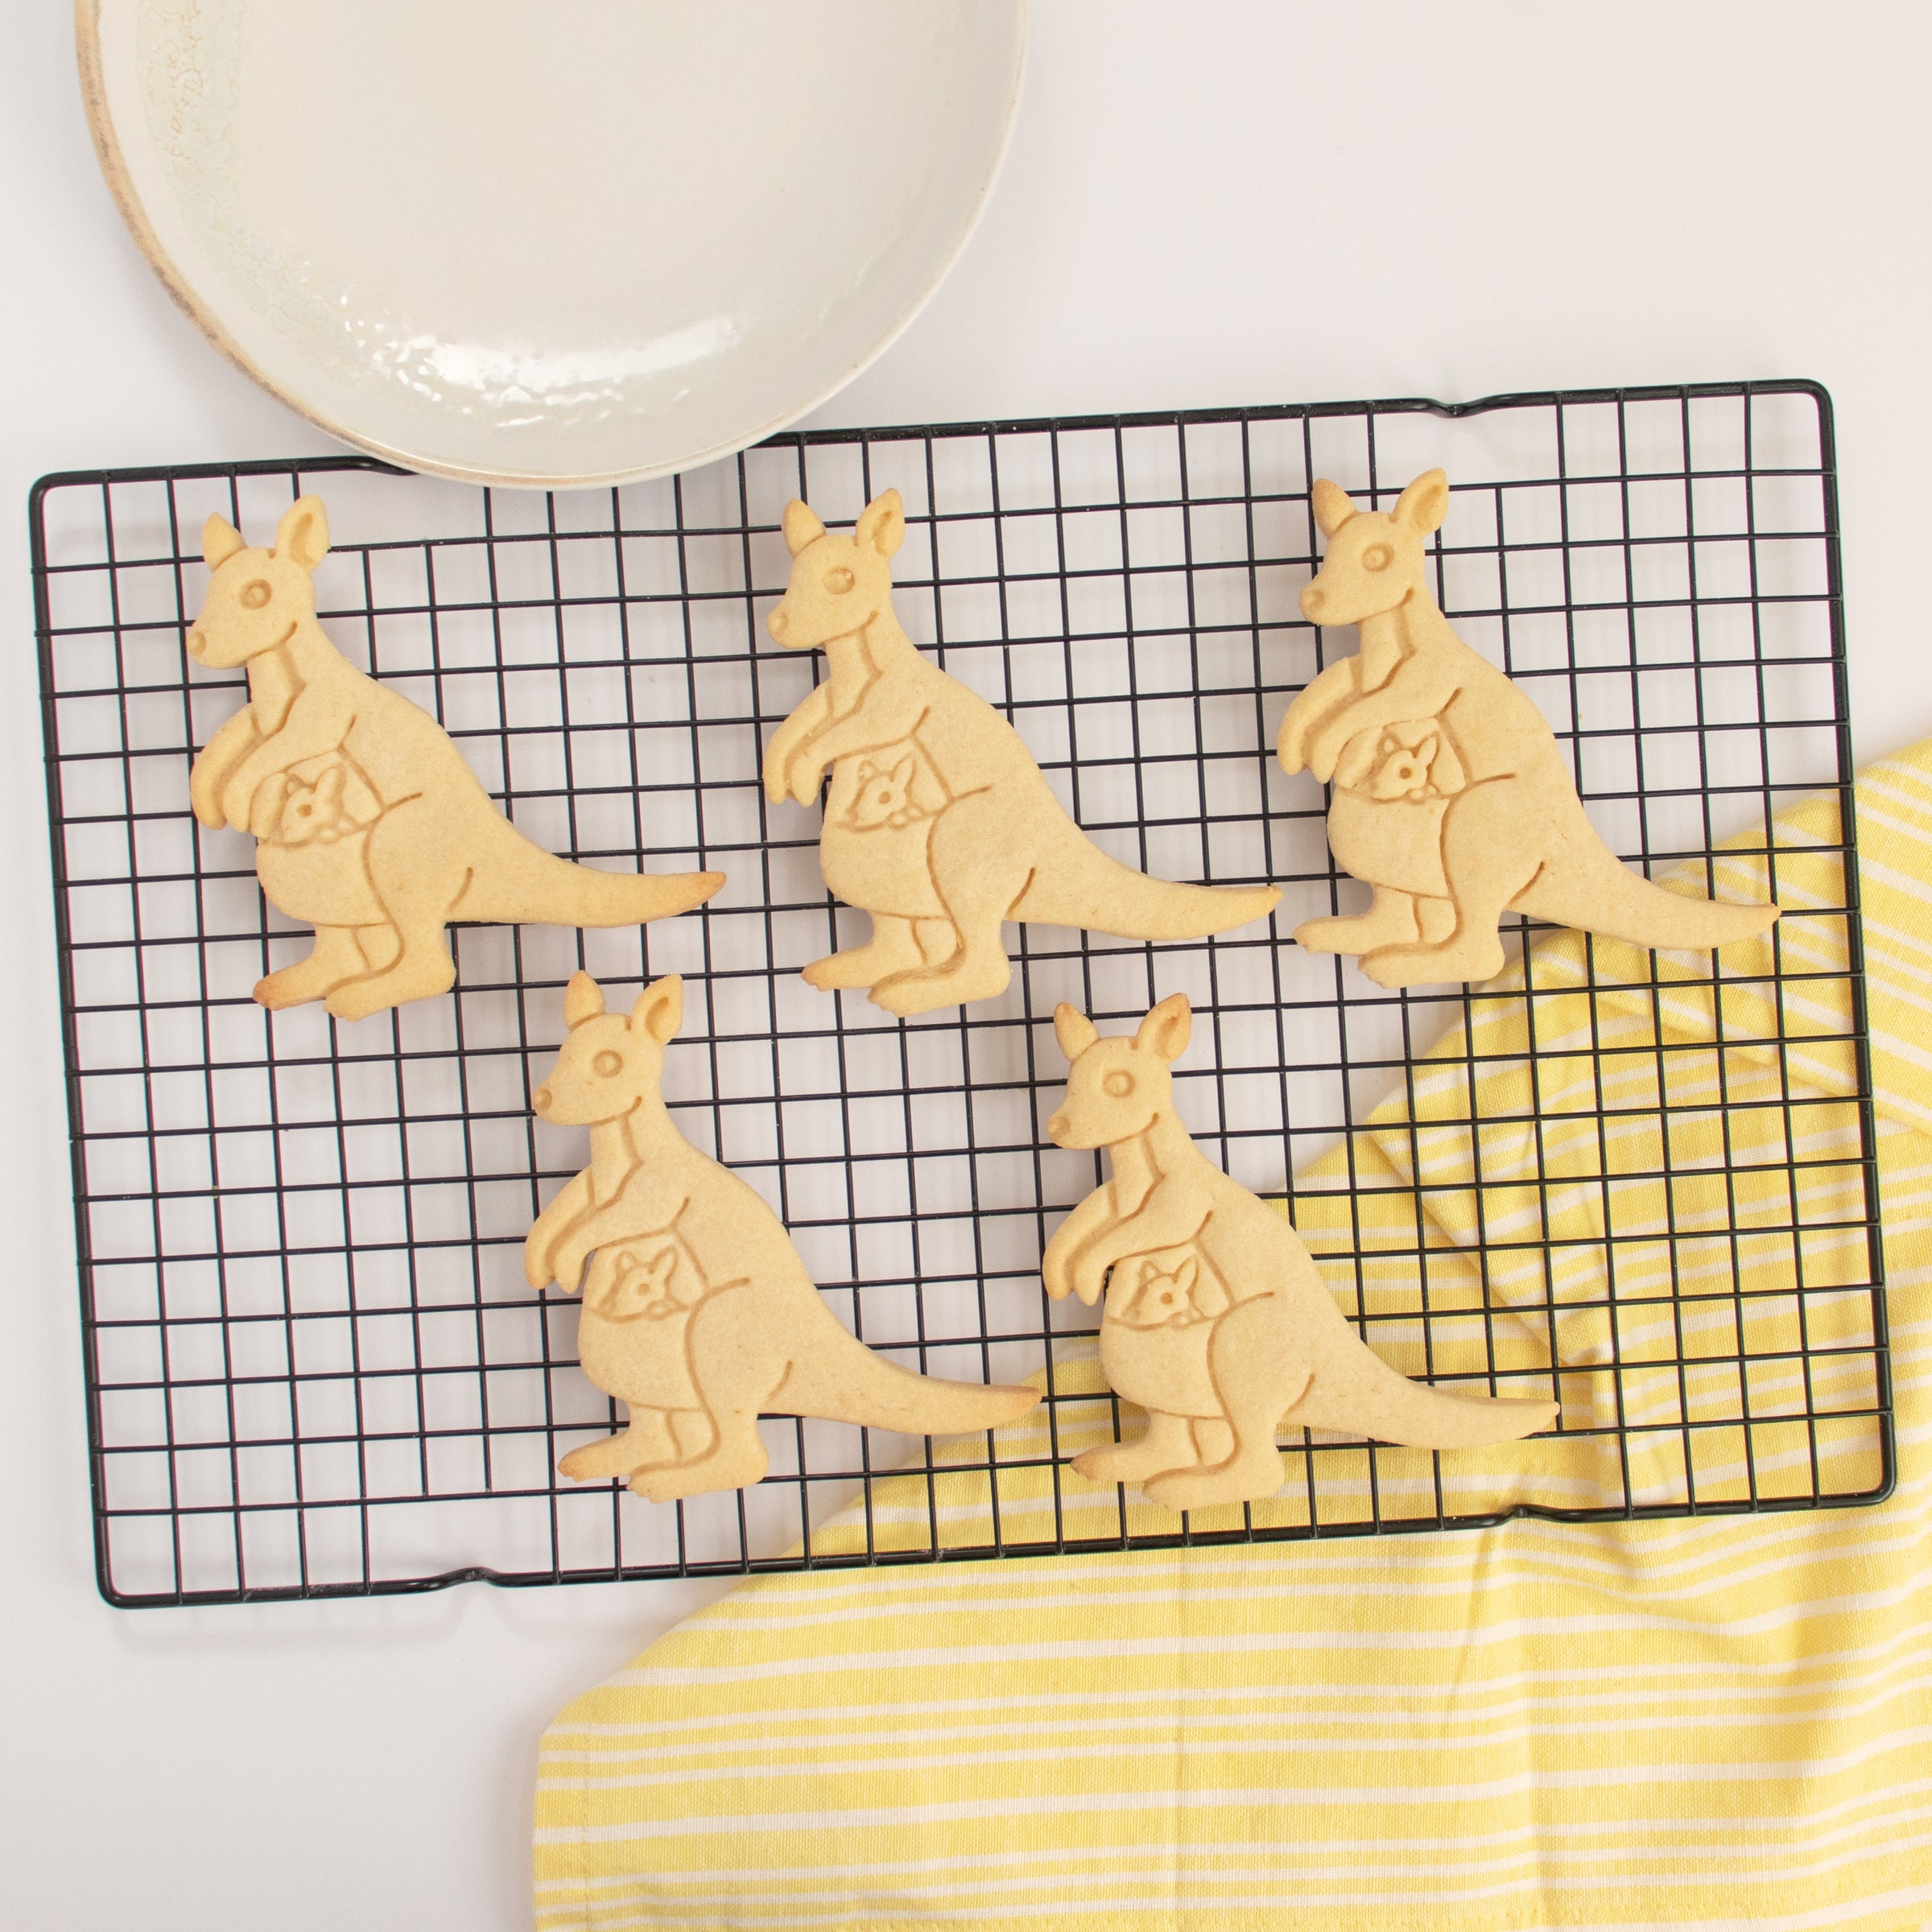 kangaroo cookies